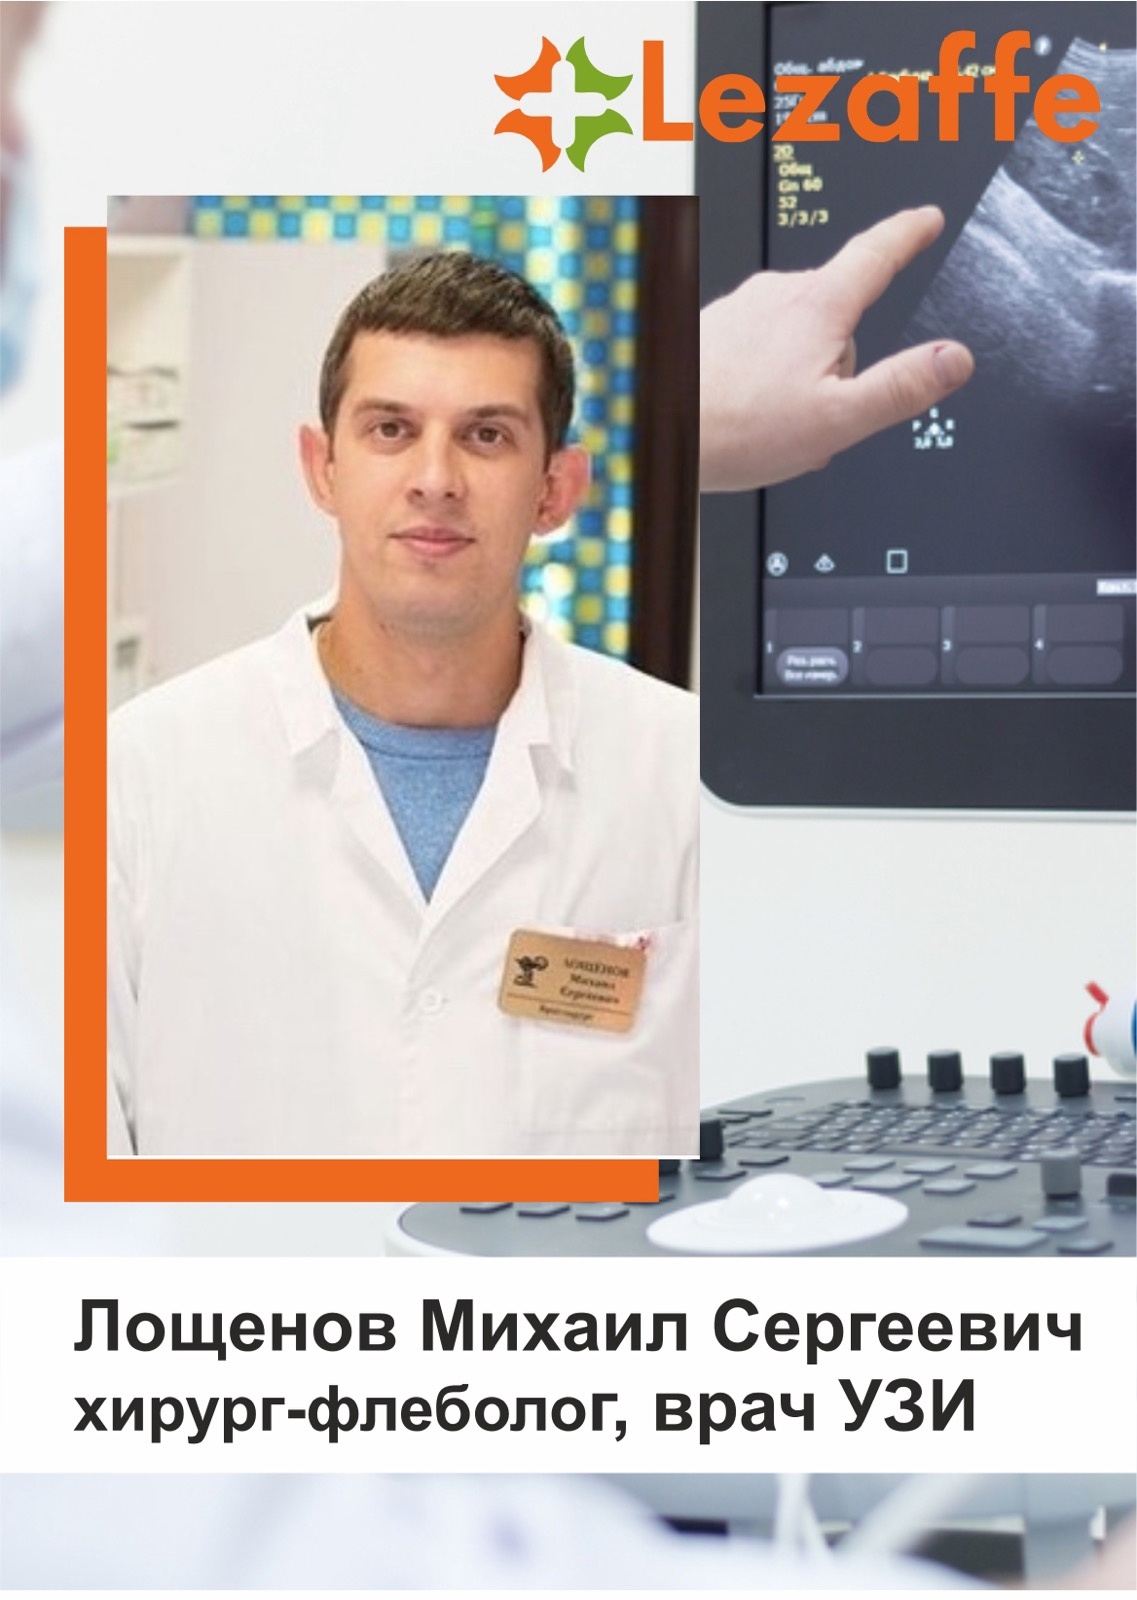 Лощенов Михаил Сергеевич - хирург, врач УЗИ в клинике Lezaffe г. Нягань